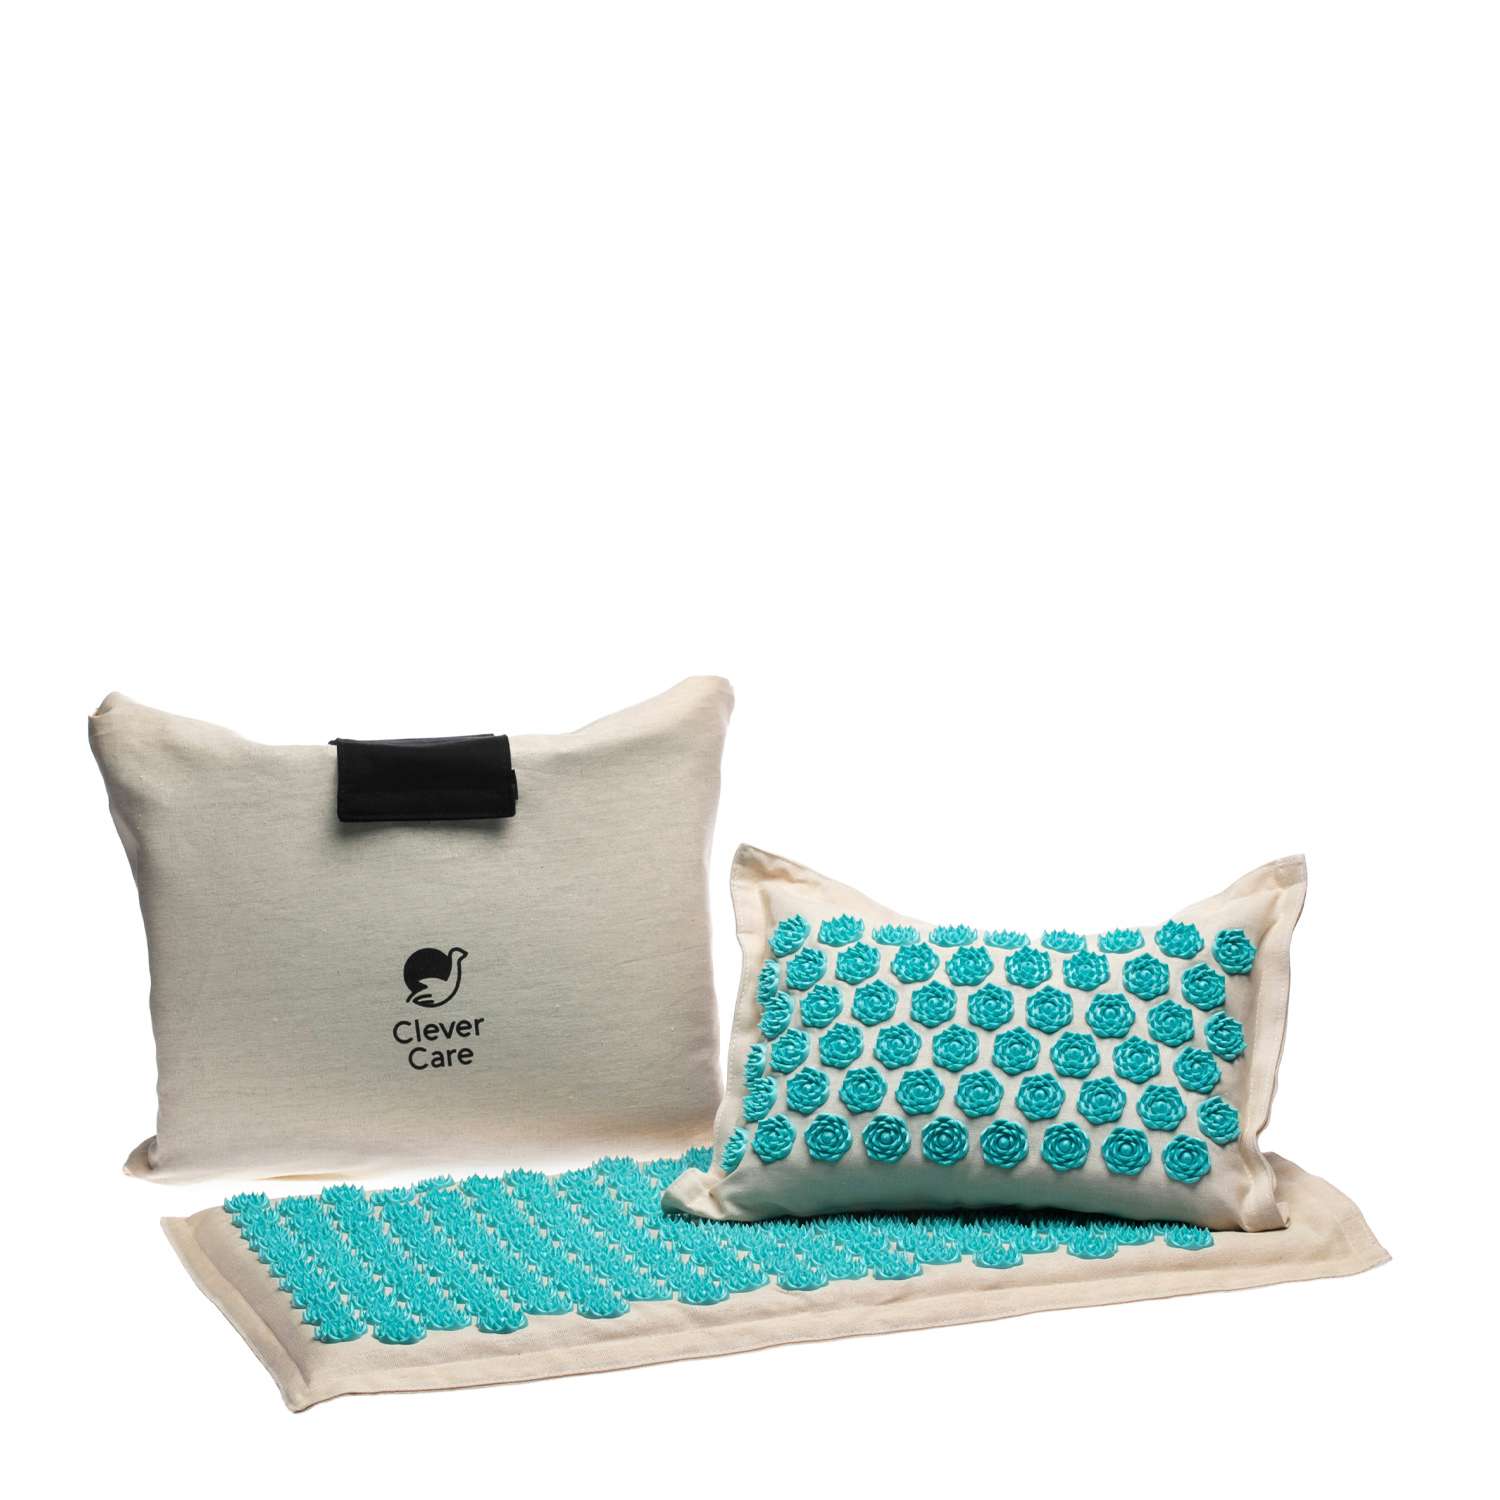 Набор: коврик и подушка CleverCare акупунктурные с сумкой для хранения и переноски цвет бежевый с голубым - фото 1